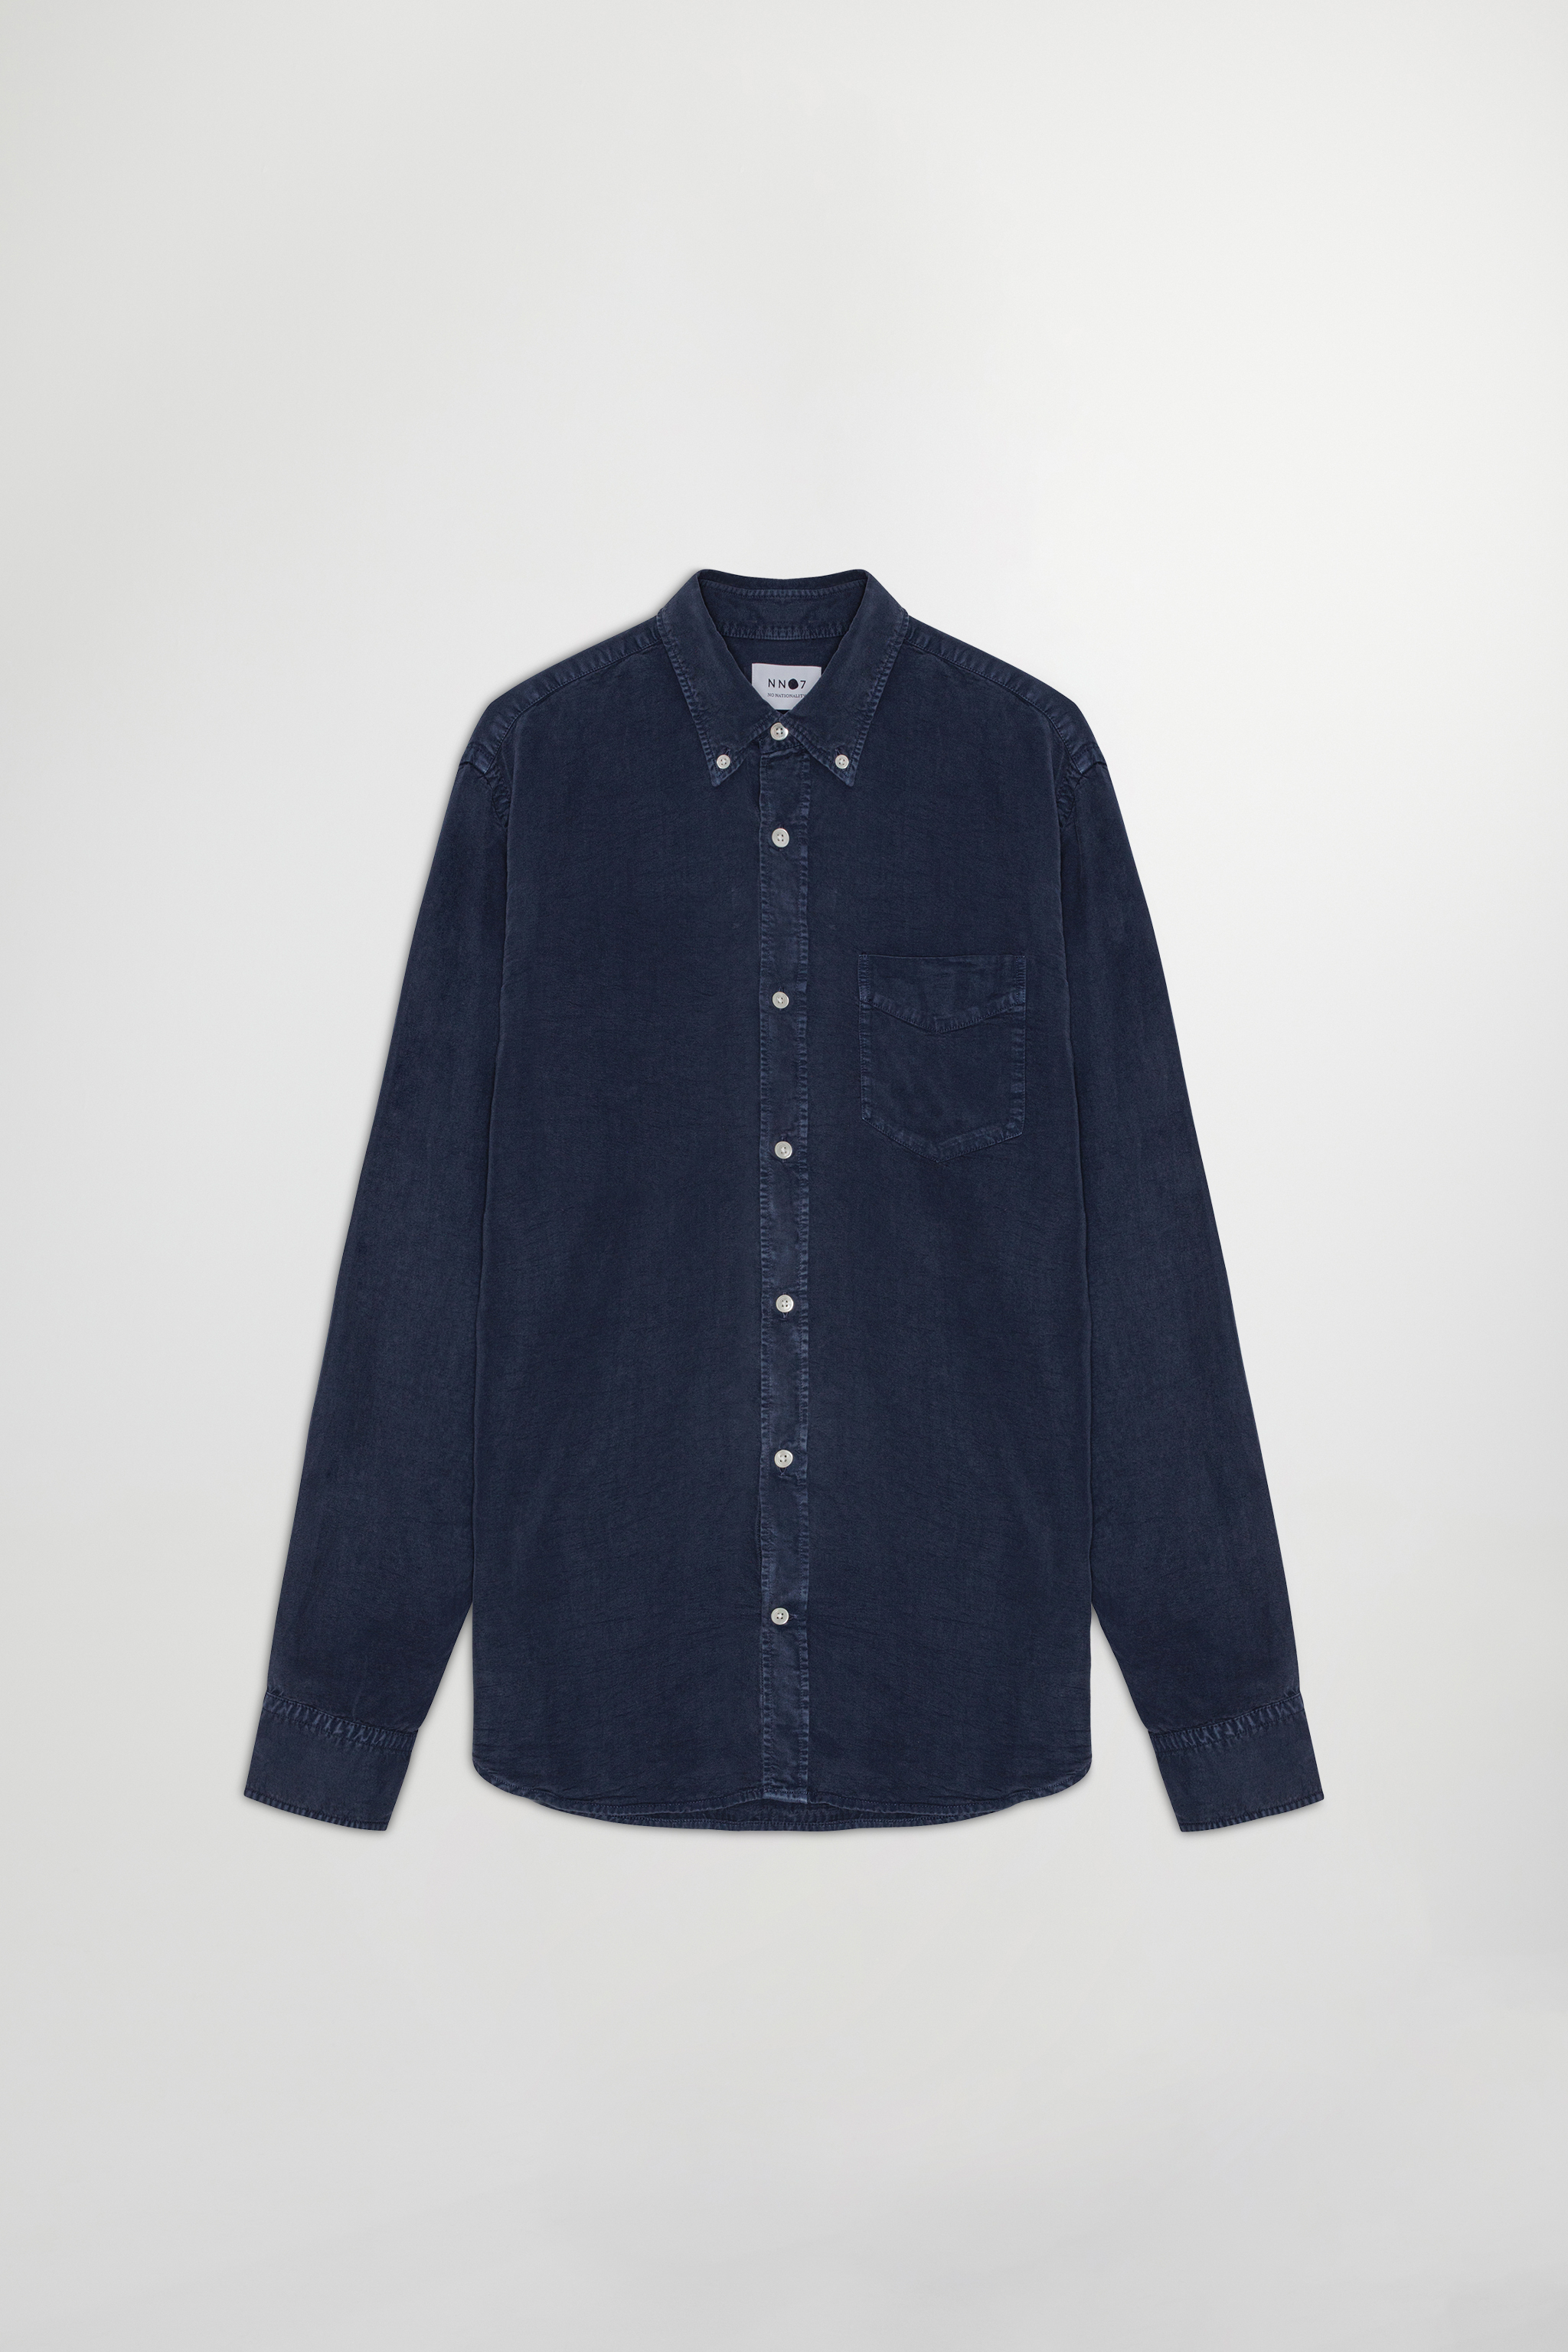 Levon 5969 men's shirt - Blue - Buy online at NN.07®